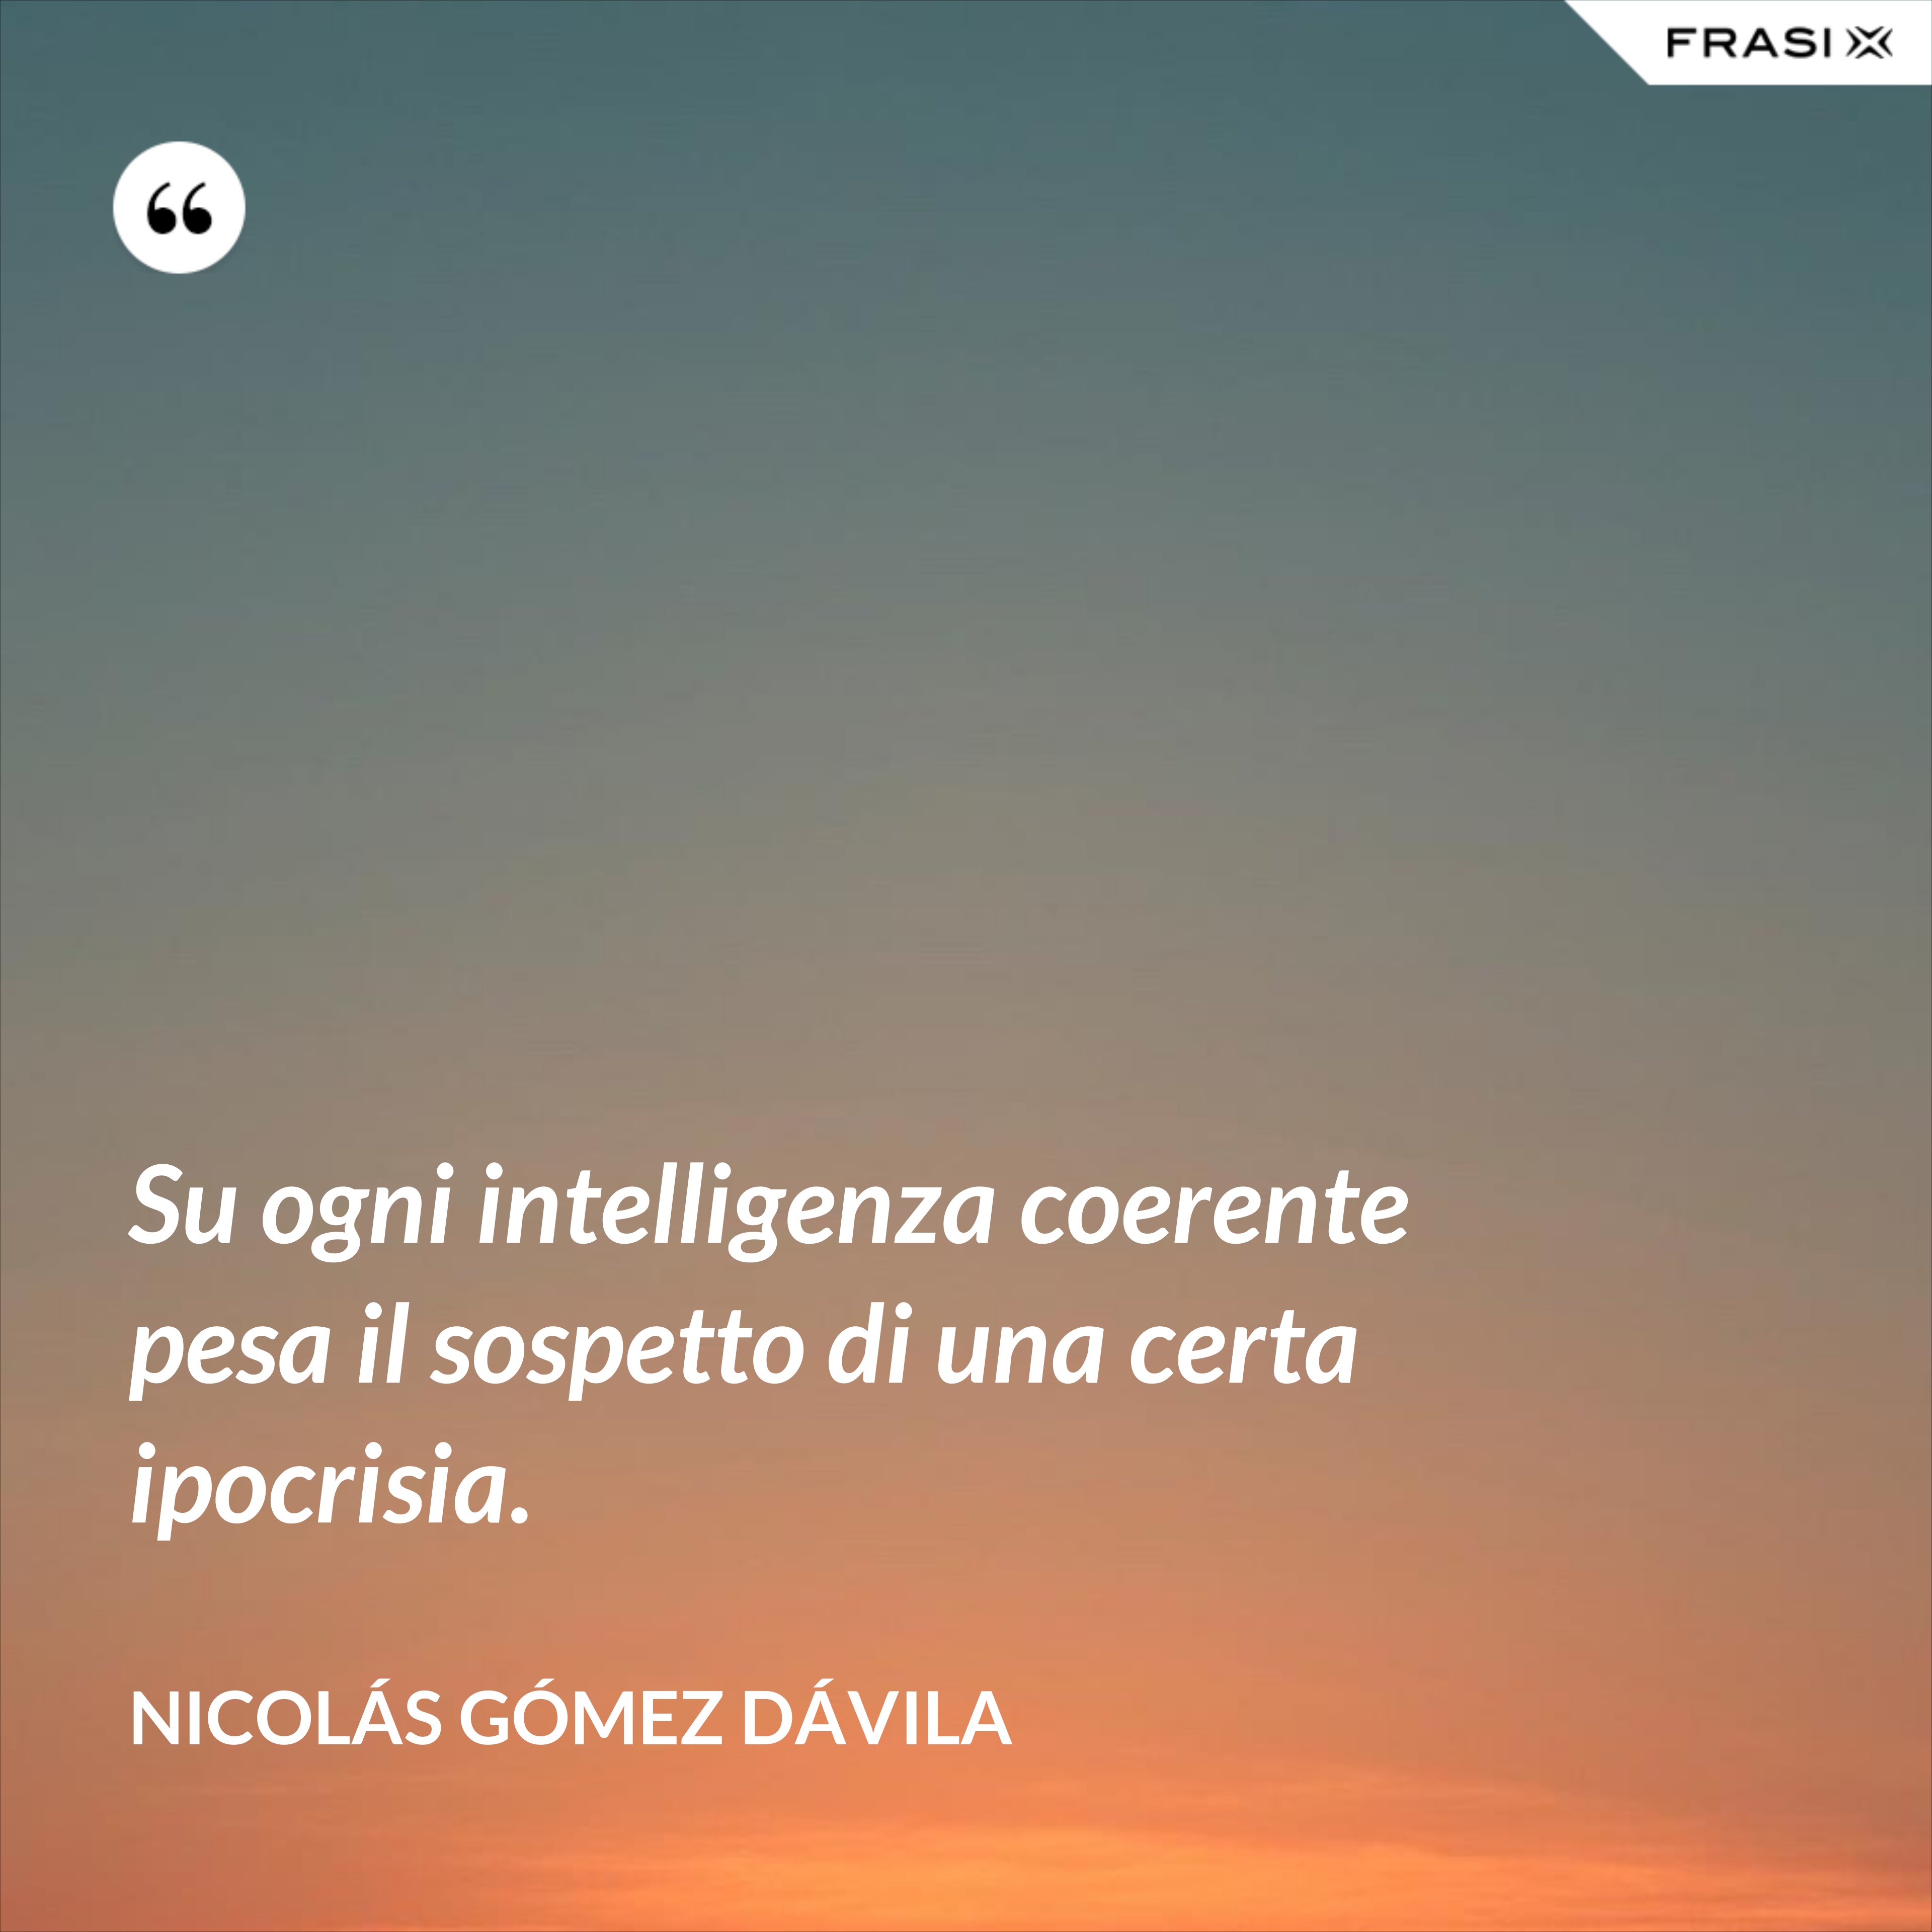 Su ogni intelligenza coerente pesa il sospetto di una certa ipocrisia. - Nicolás Gómez Dávila